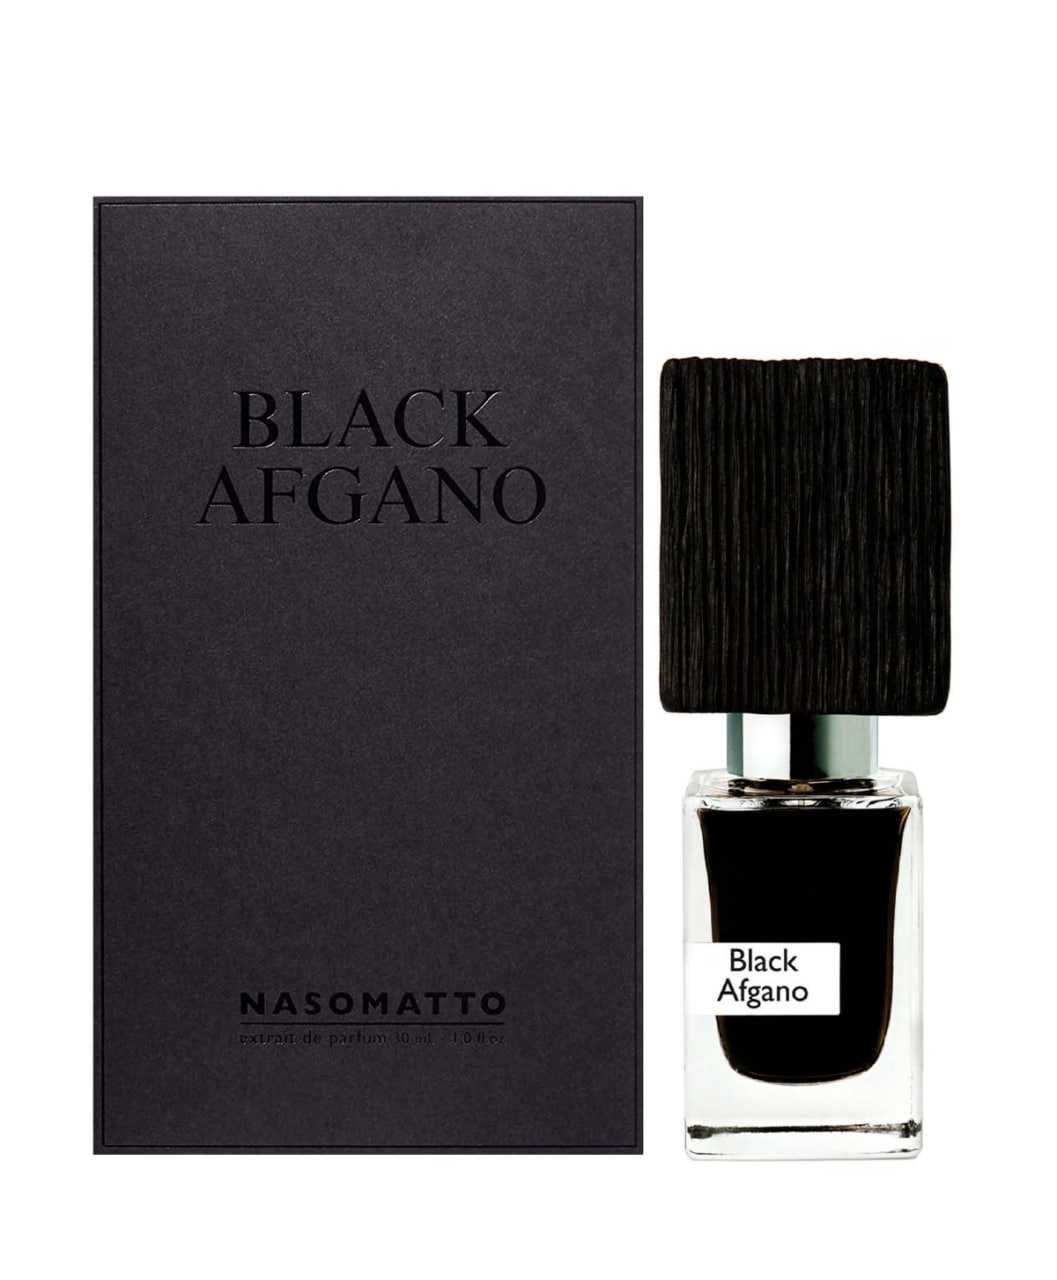 Nasomato Black Afgano Extrait De Parfum 30ml ORIGINAL